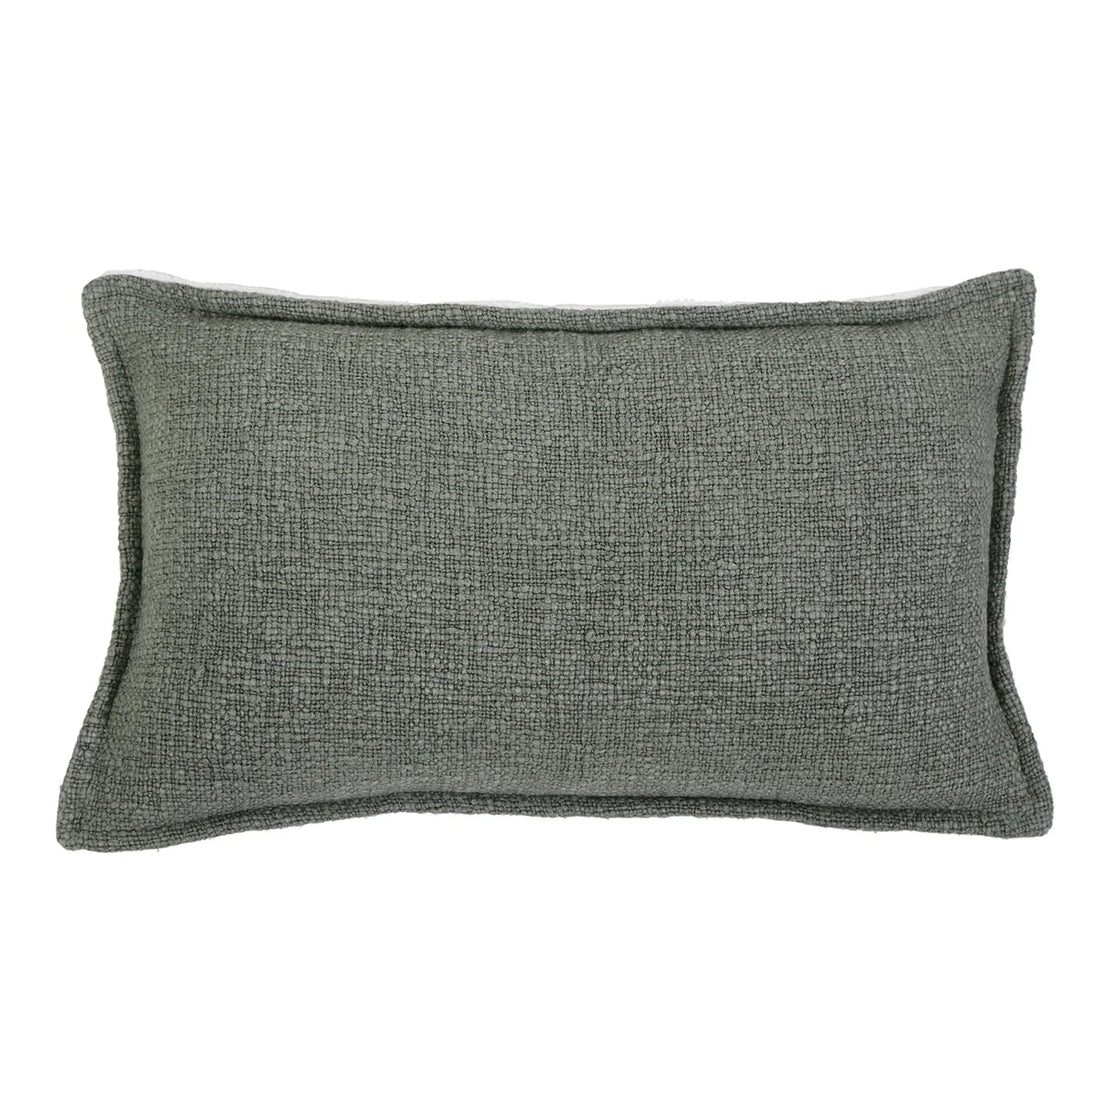 Humboldt Handwoven Rectangular Pillow, Moss